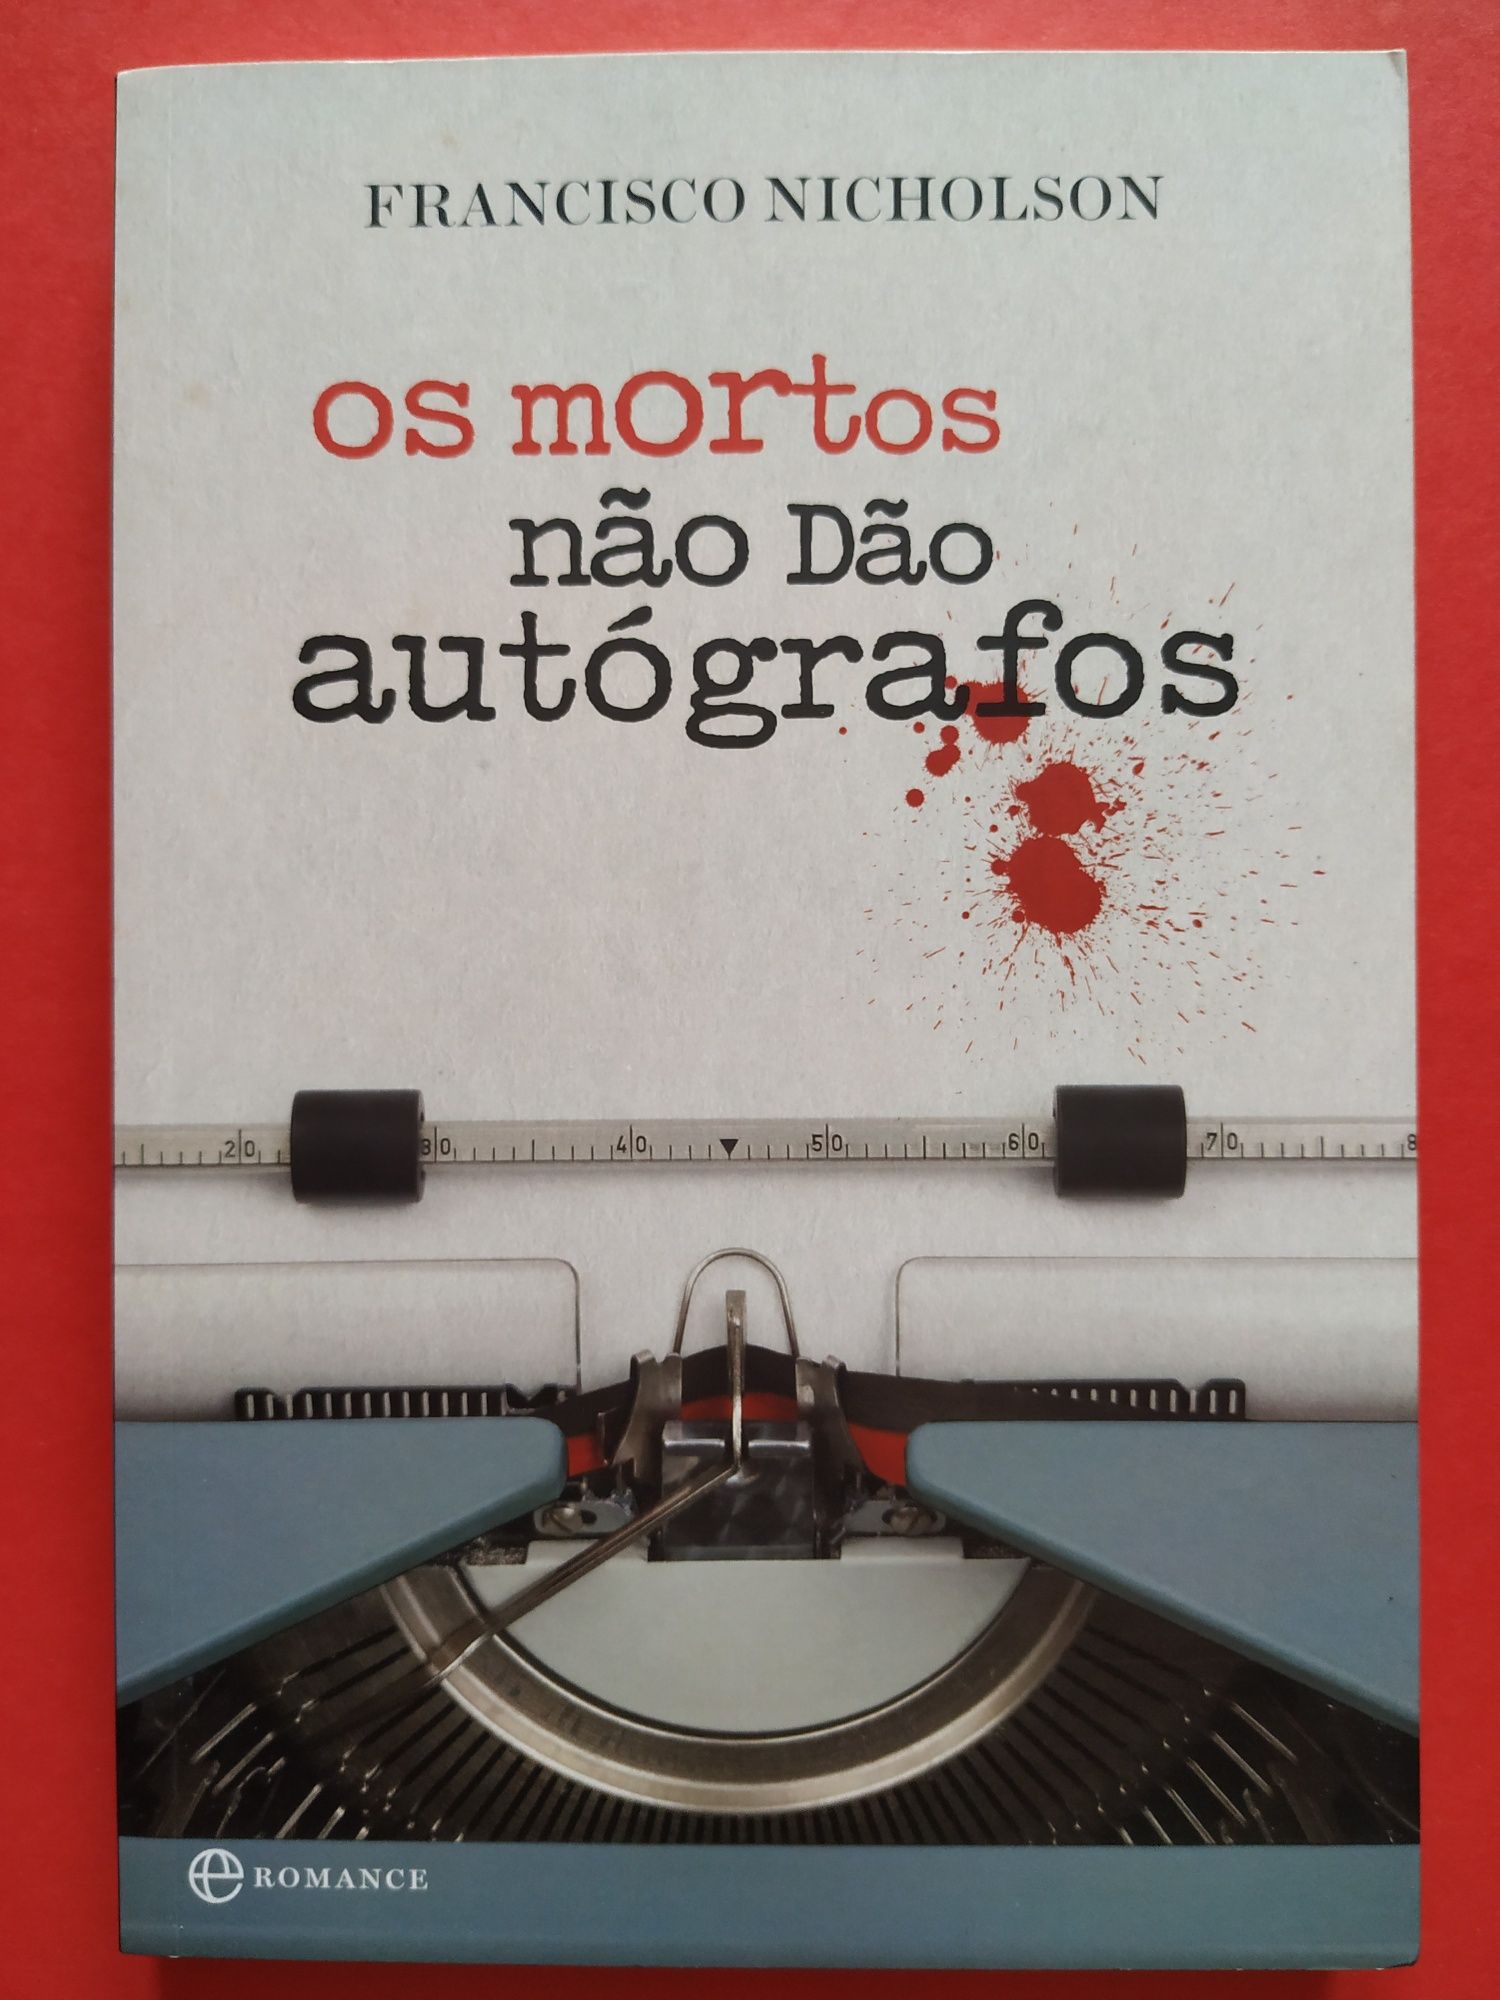 Vários livros de autores portugueses (parte 3)